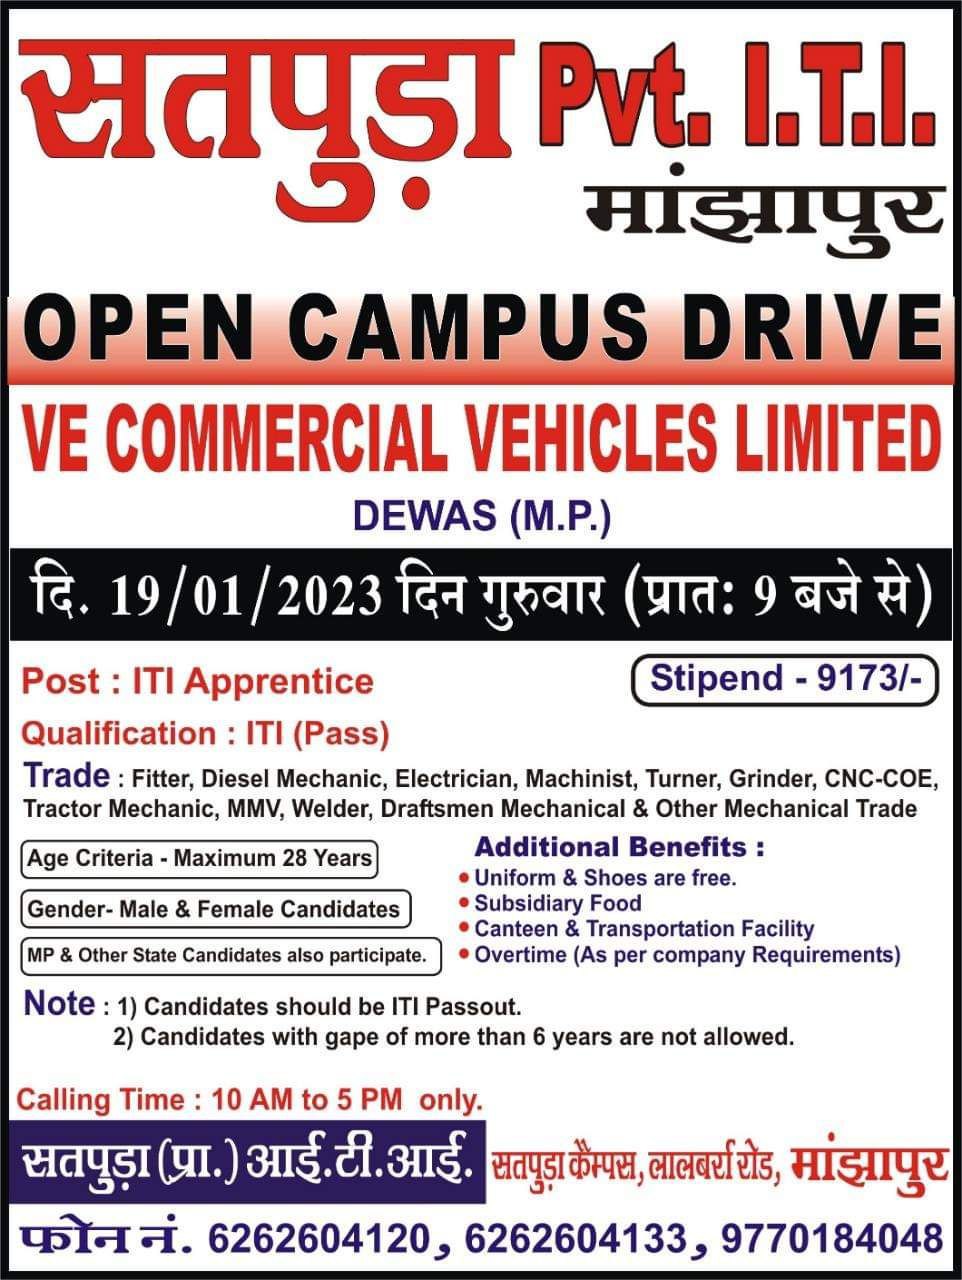 VE Commercial Vehicles Recruitment 2023